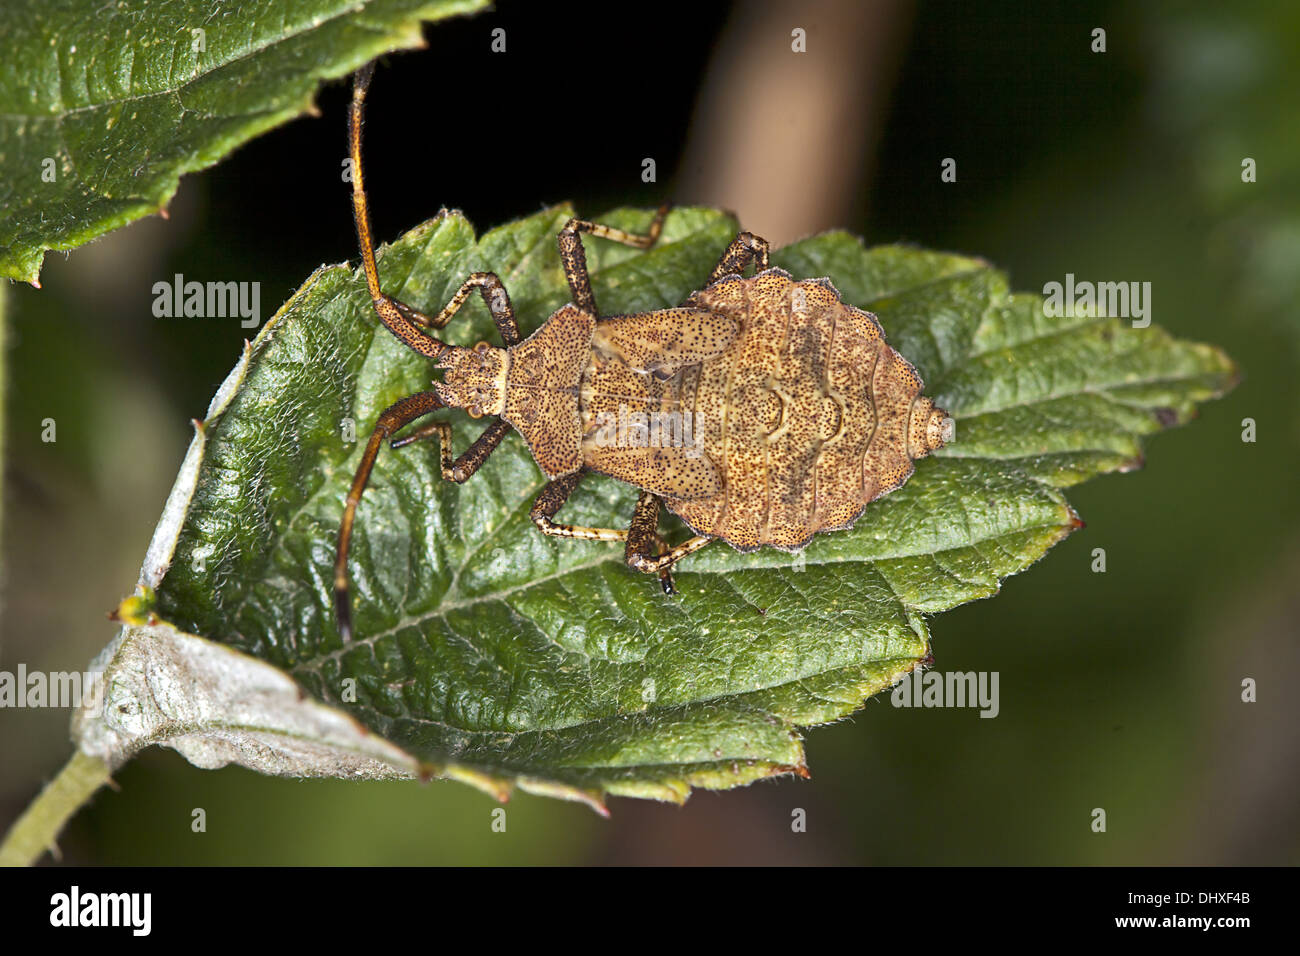 Squash Bug, Coreus marginatus Stock Photo